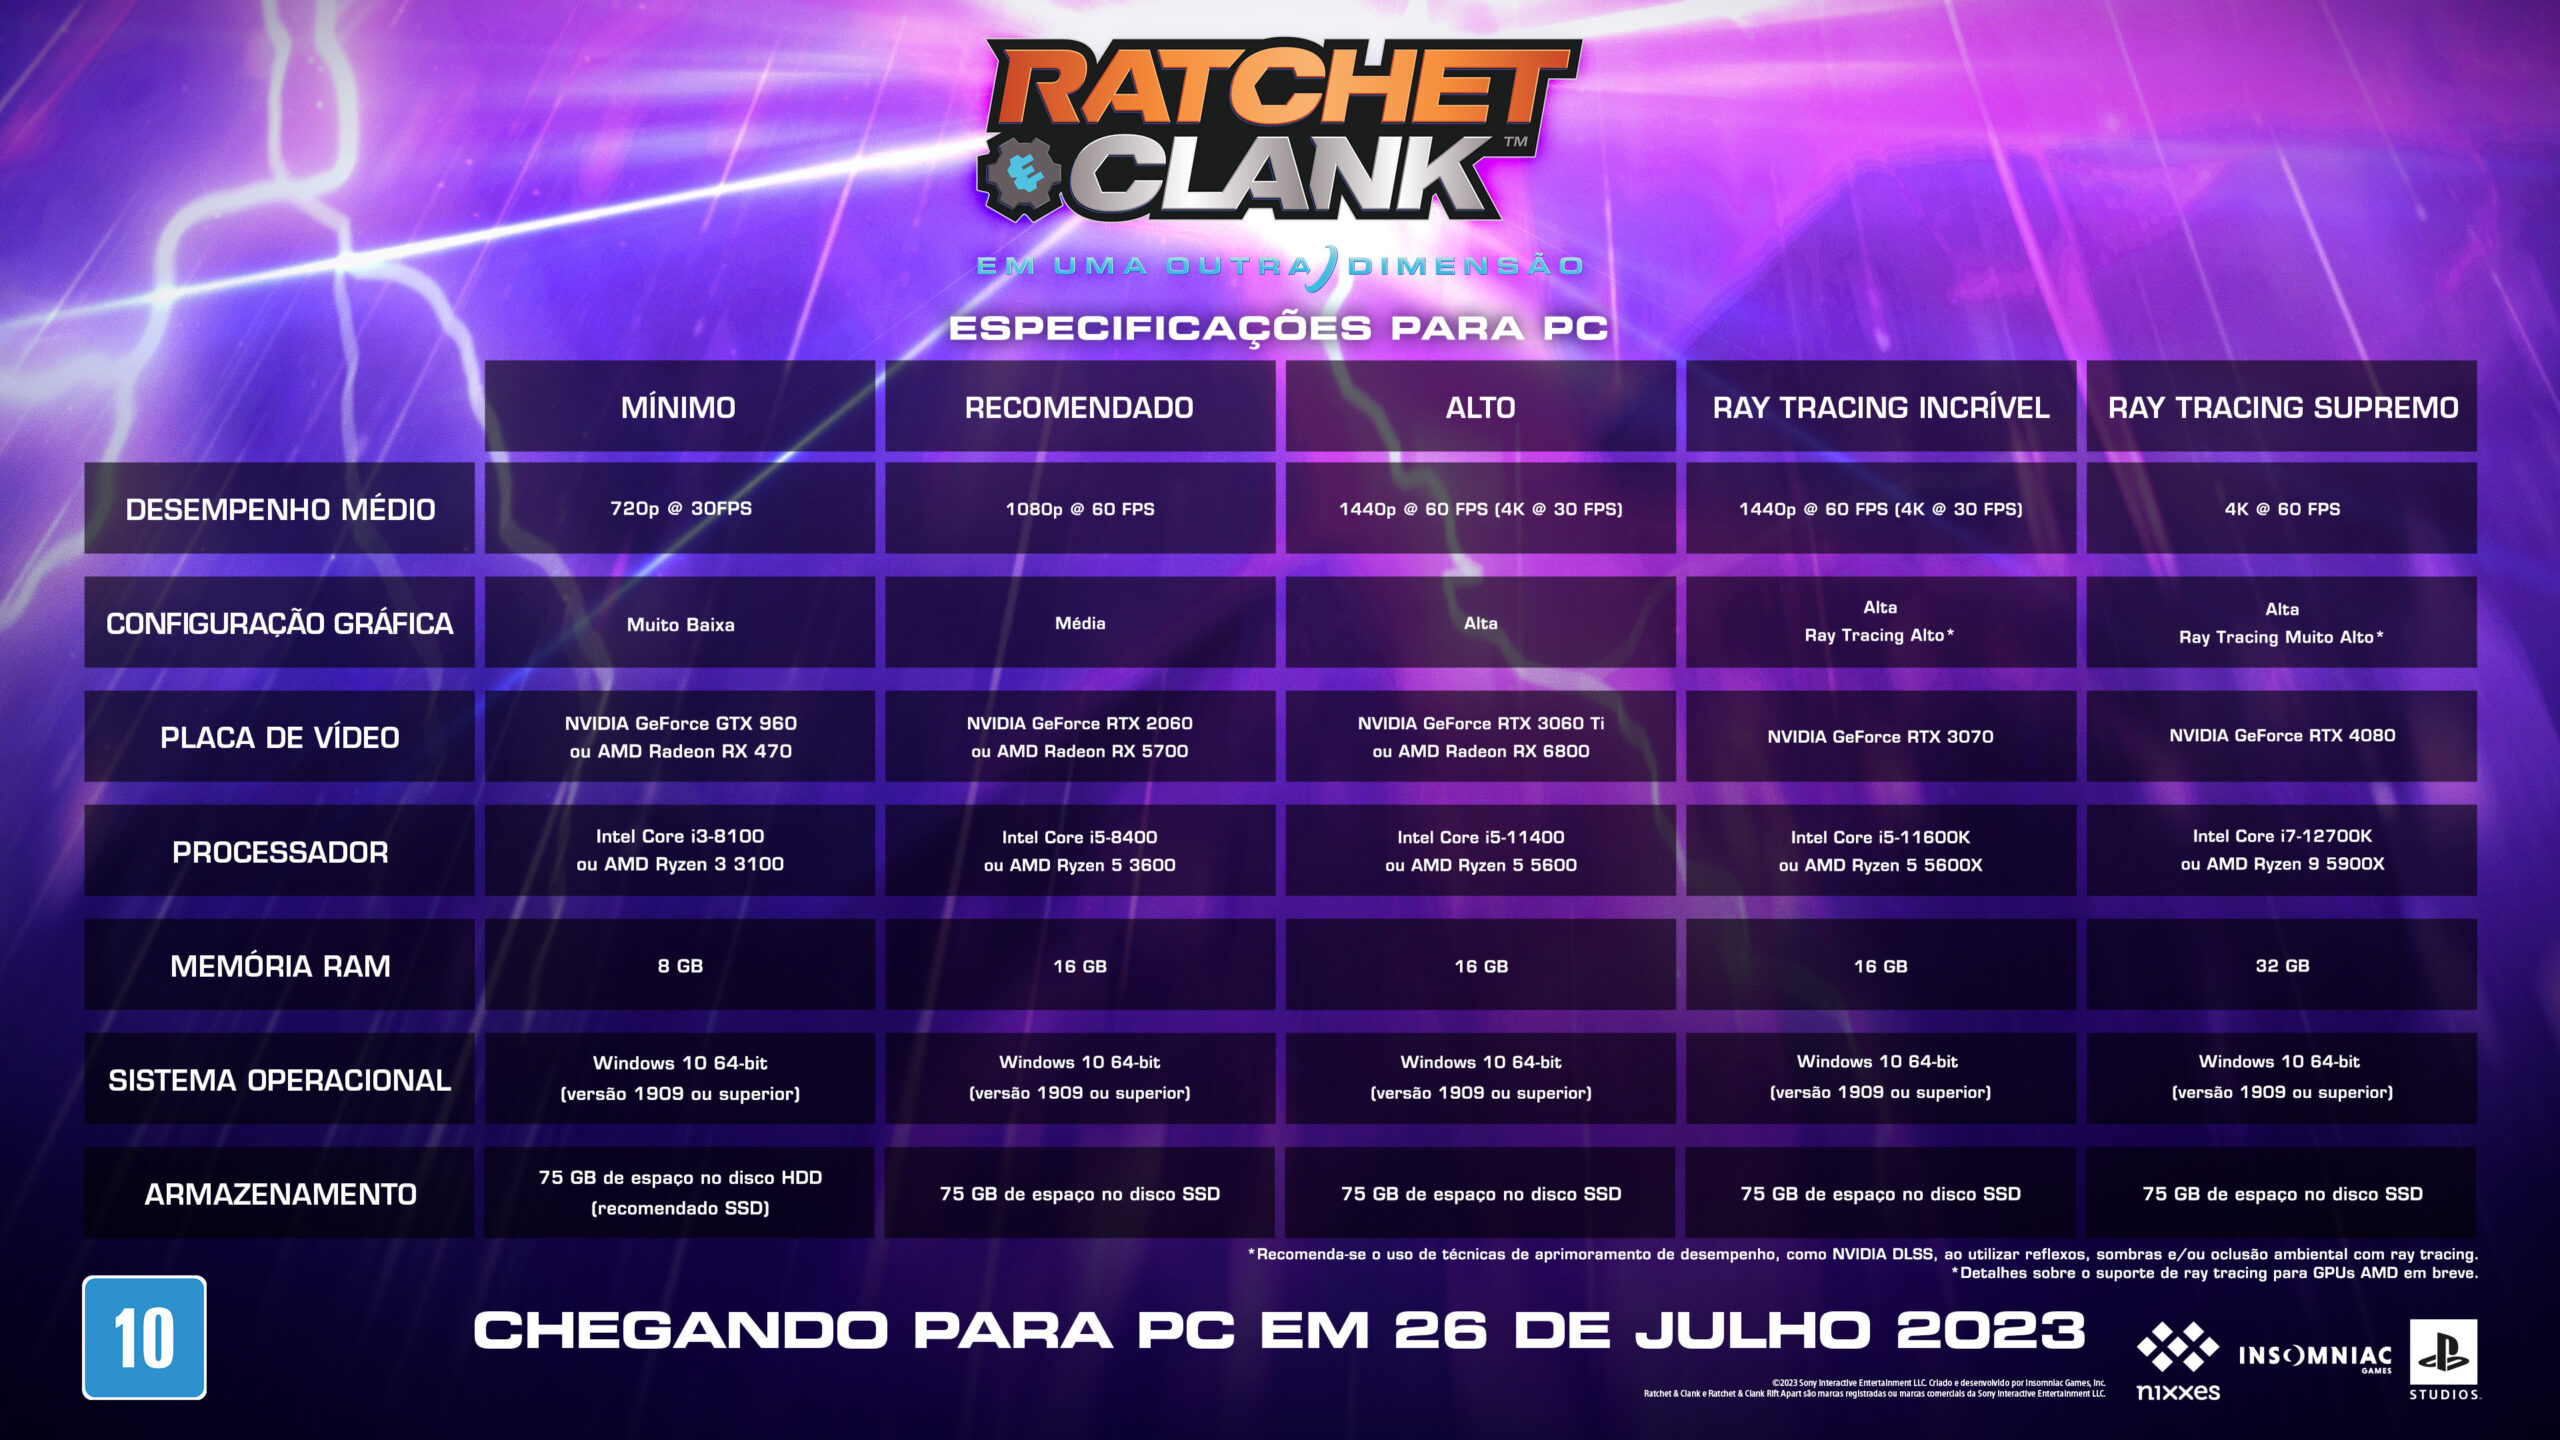 Revelamos as especificações e novos recursos para PC de Ratchet